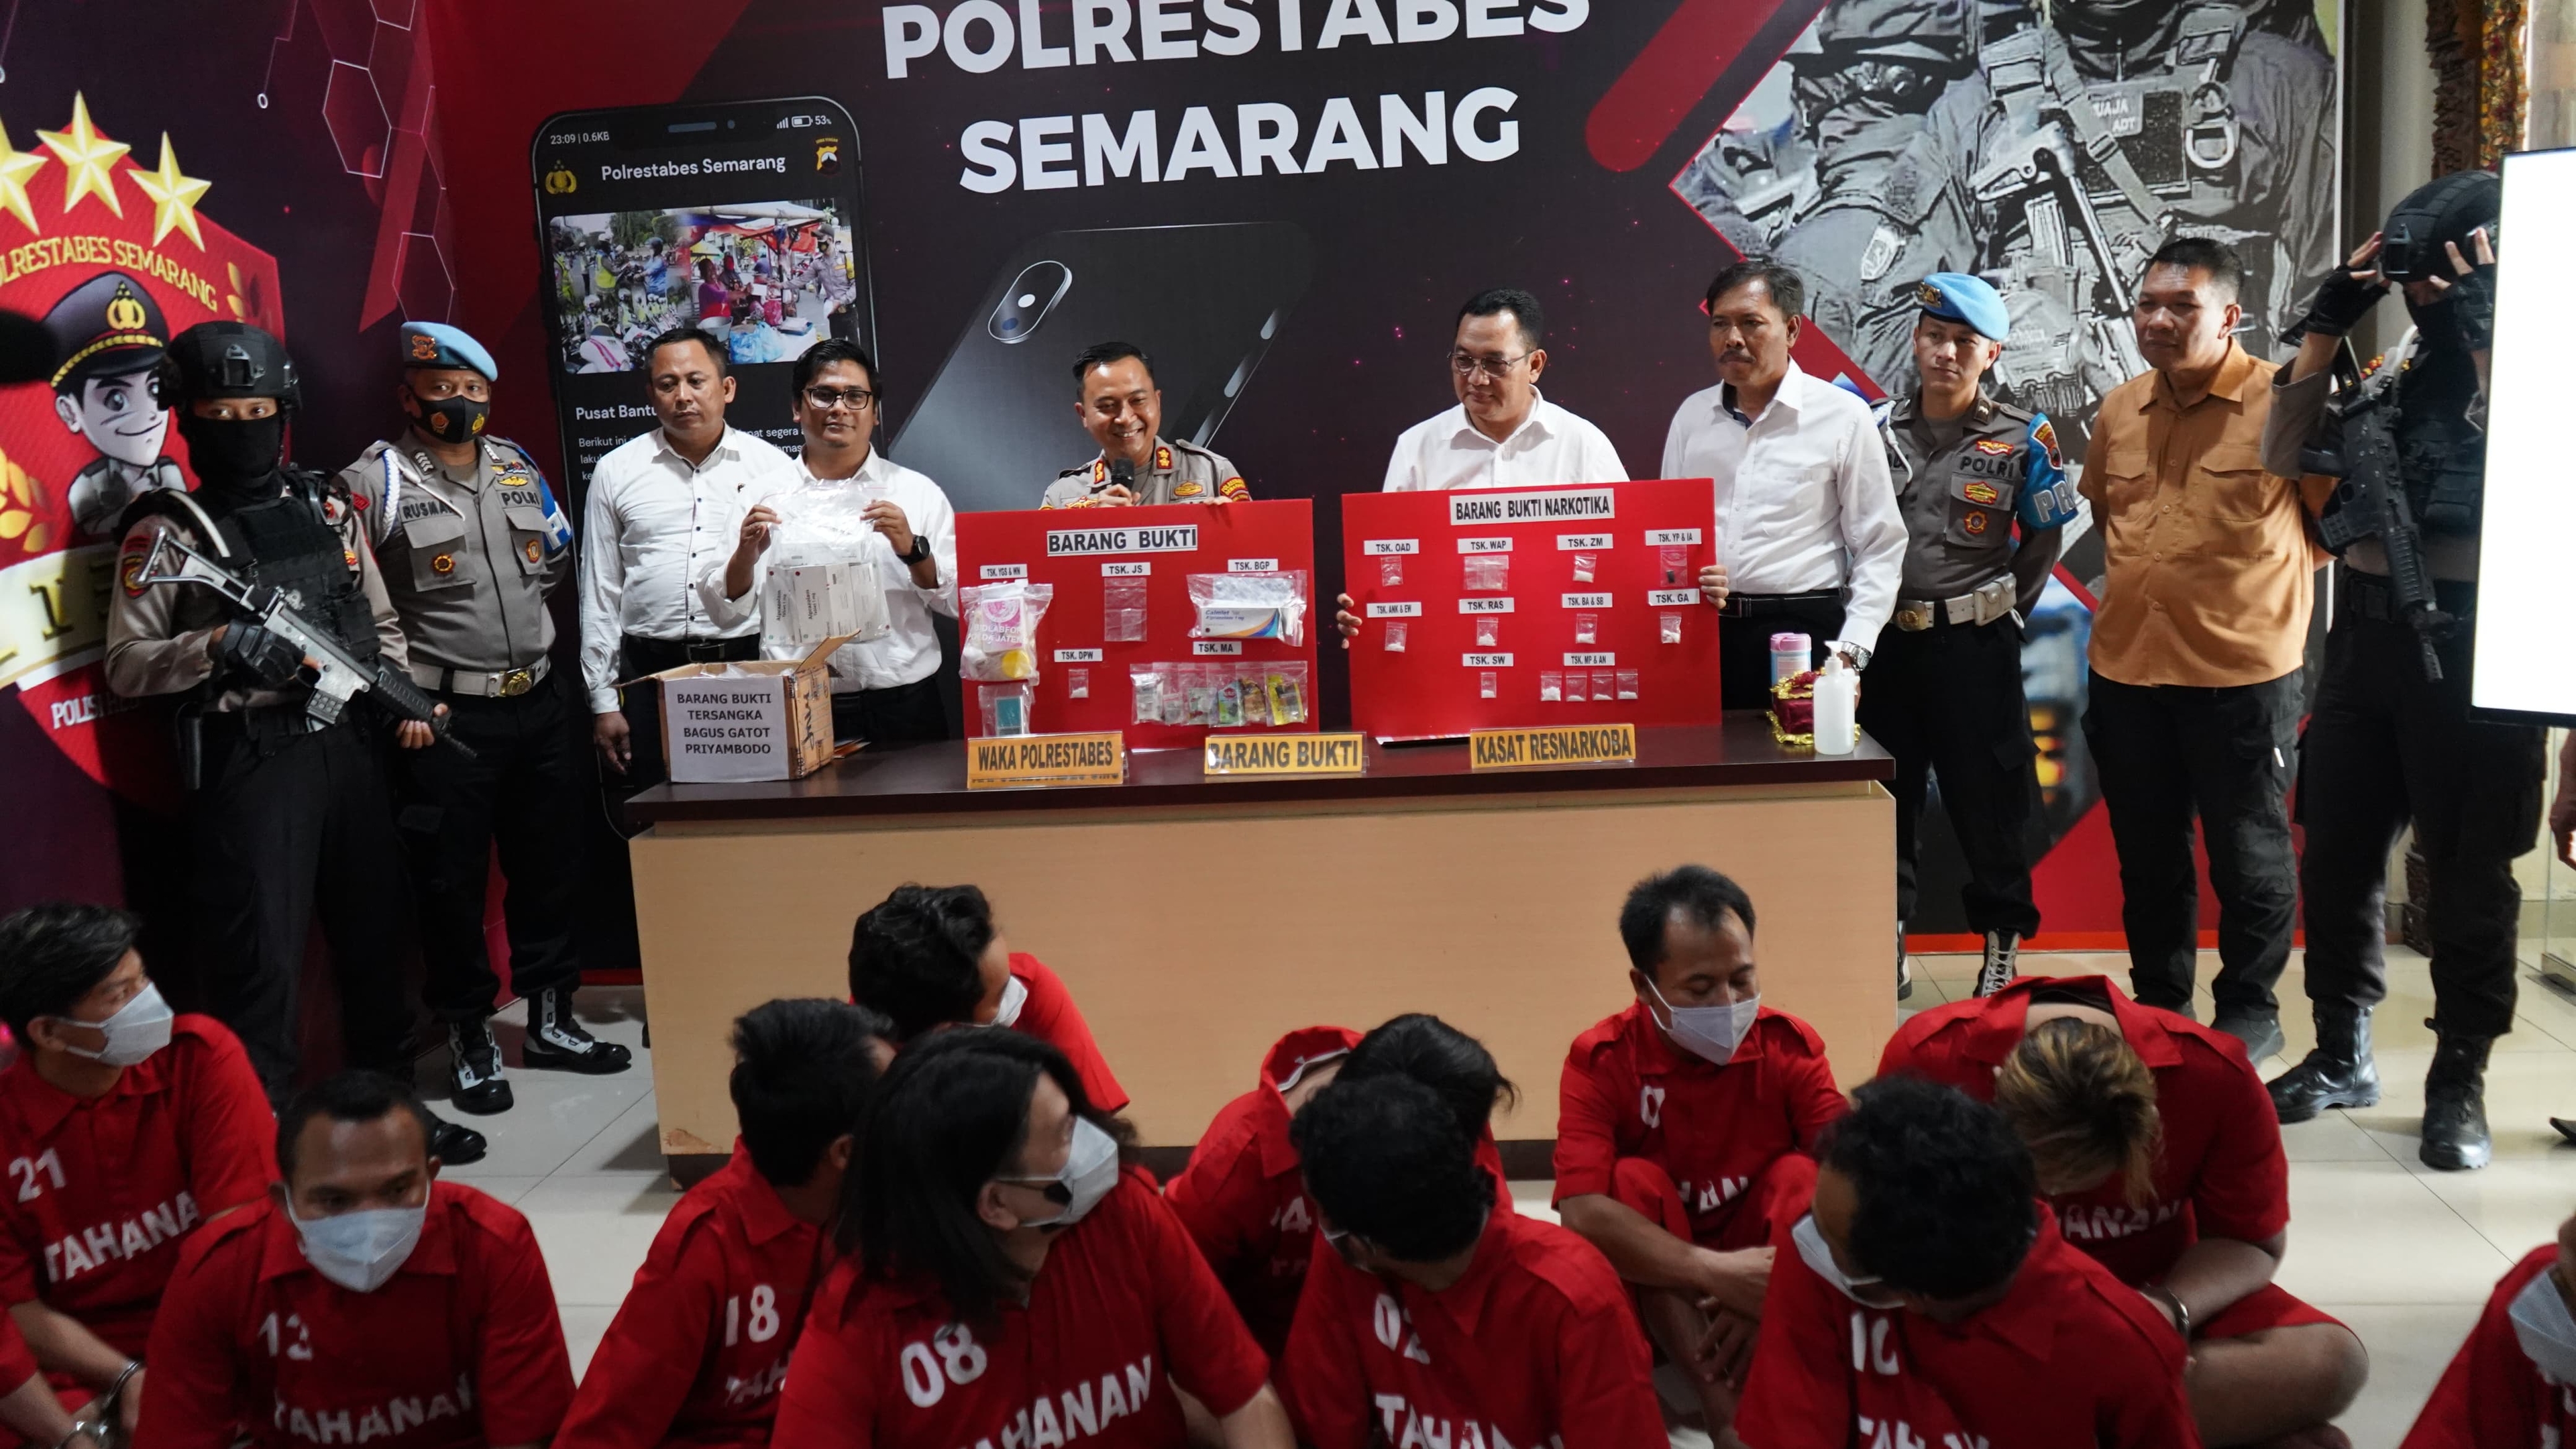 Satresnarkoba Polrestabes Semarang kembali mengungkap kasus narkotika dengan jumlah barang bukti sebanyak sabu 63,85 gram, psikotropika sebanyak 1.993 butir dan obat keras 2500 butir